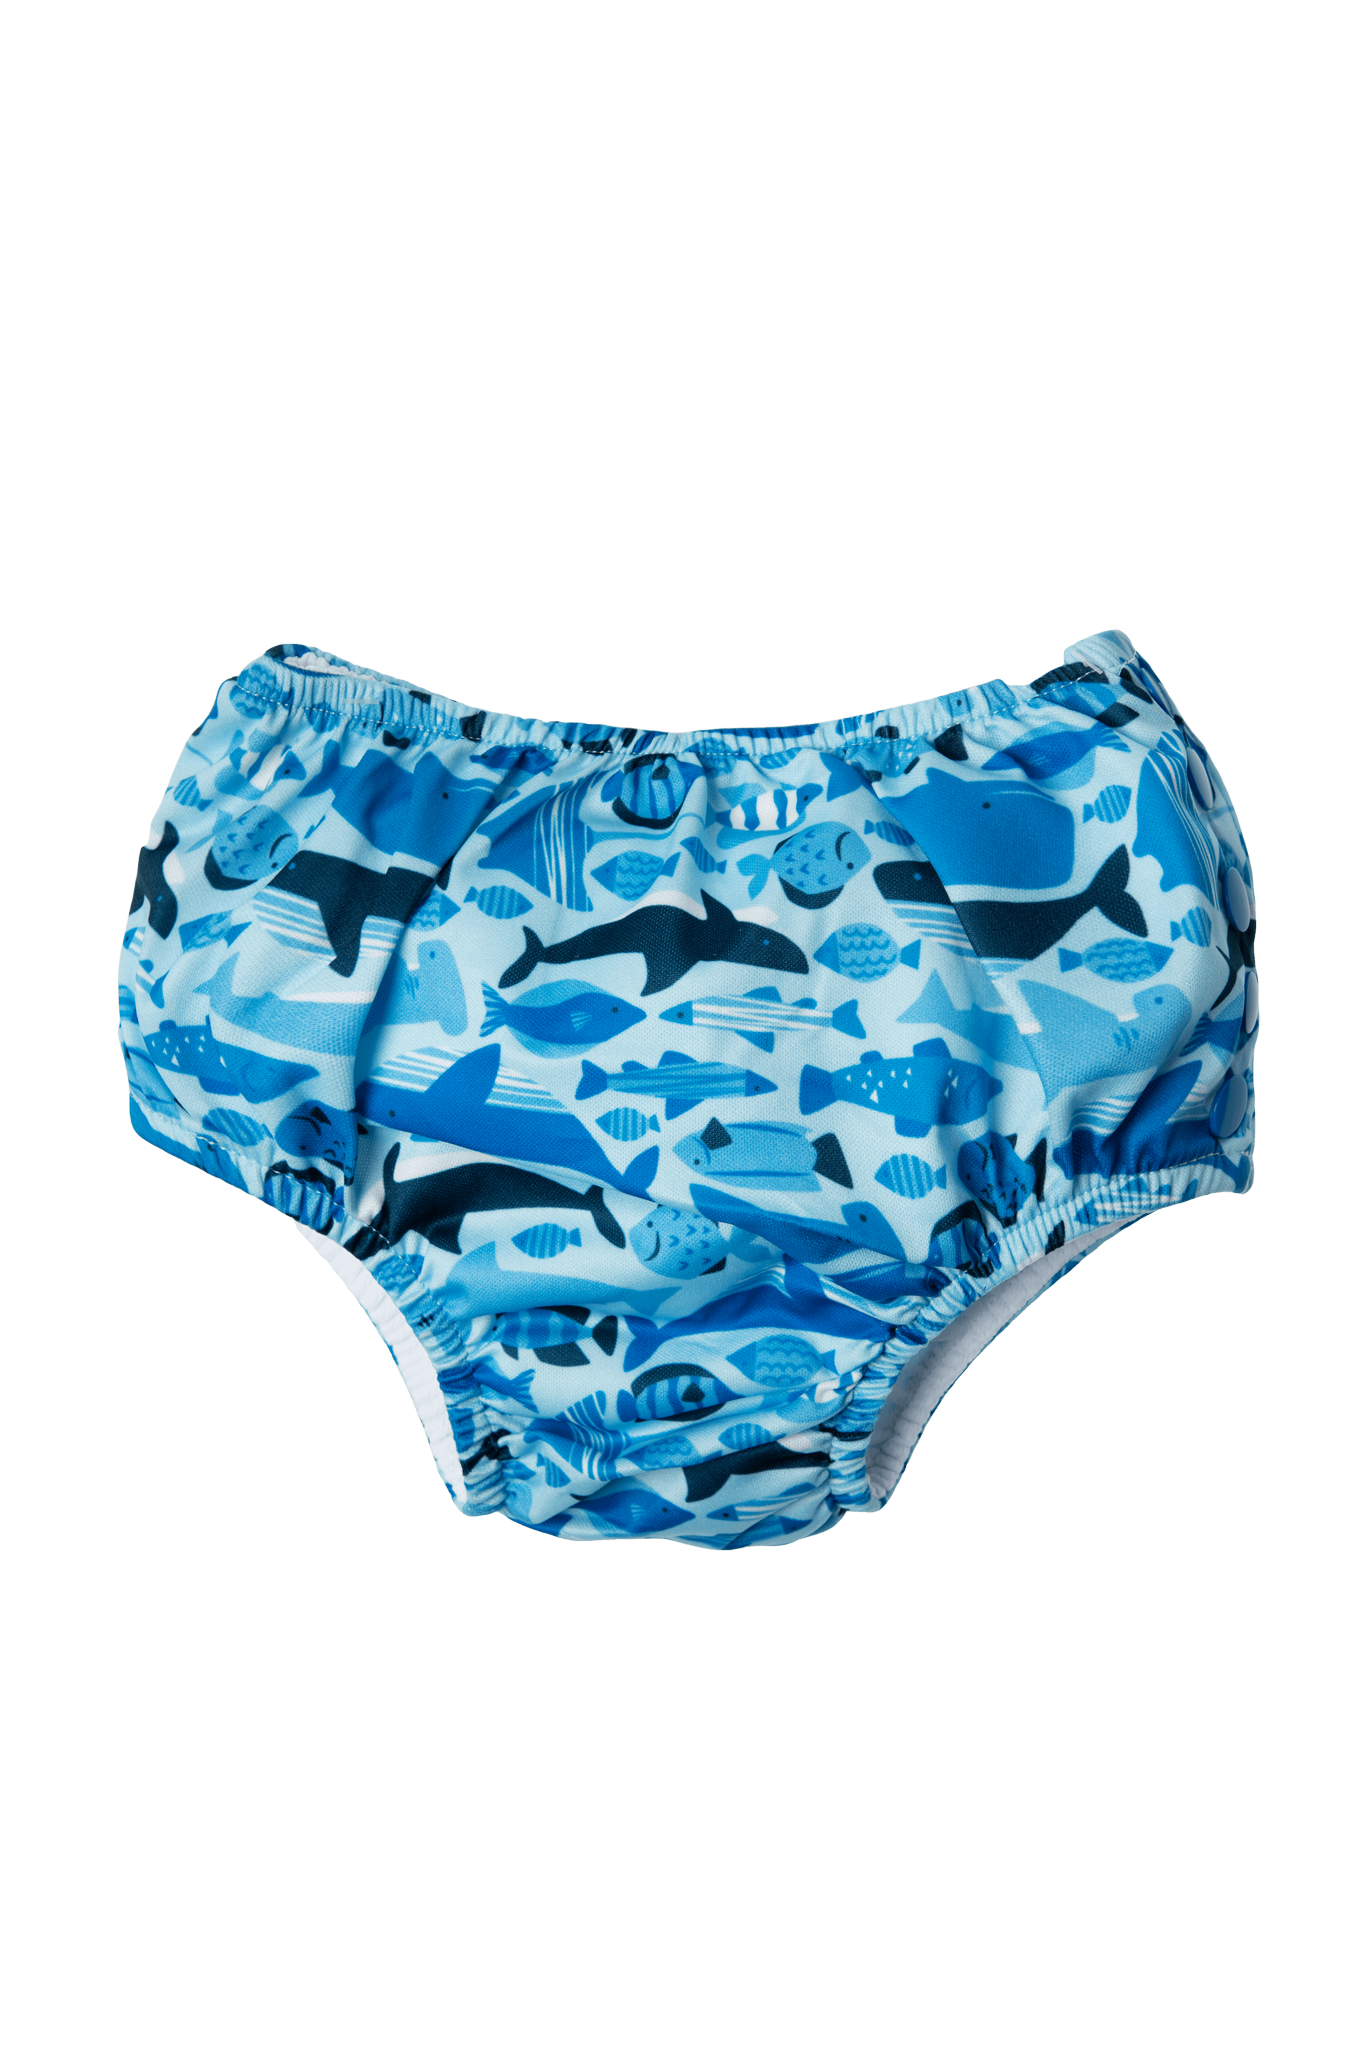 Iplay Snap Reusable Absorbent Swim Diaper- Undersea Blue